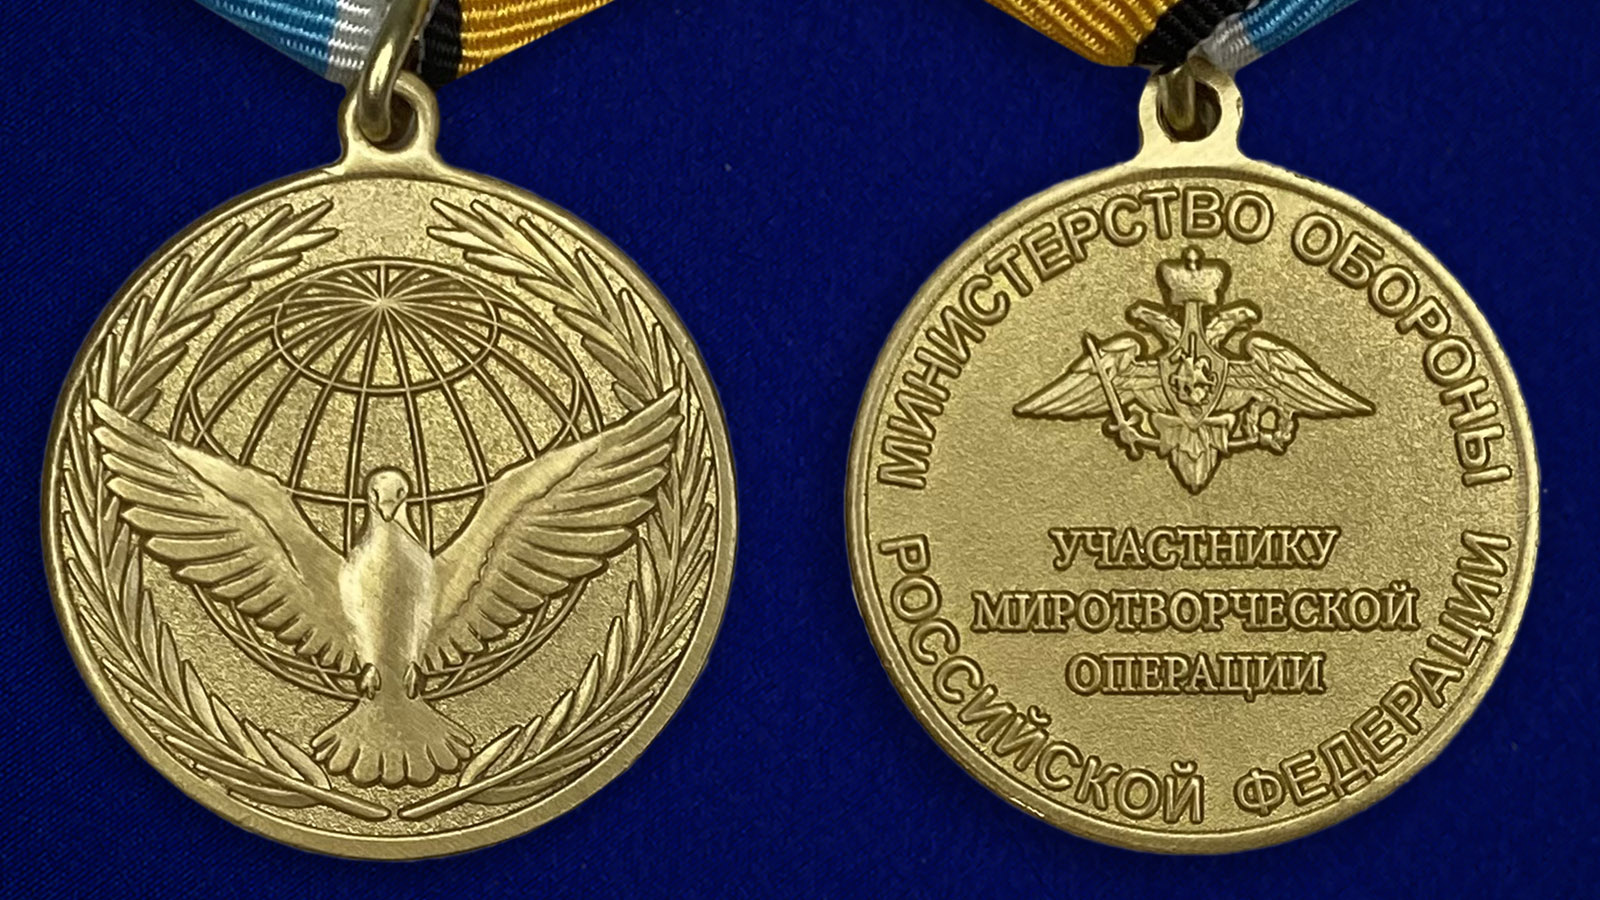 Описание медали "Участнику миротворческой операции" - аверс и реверс